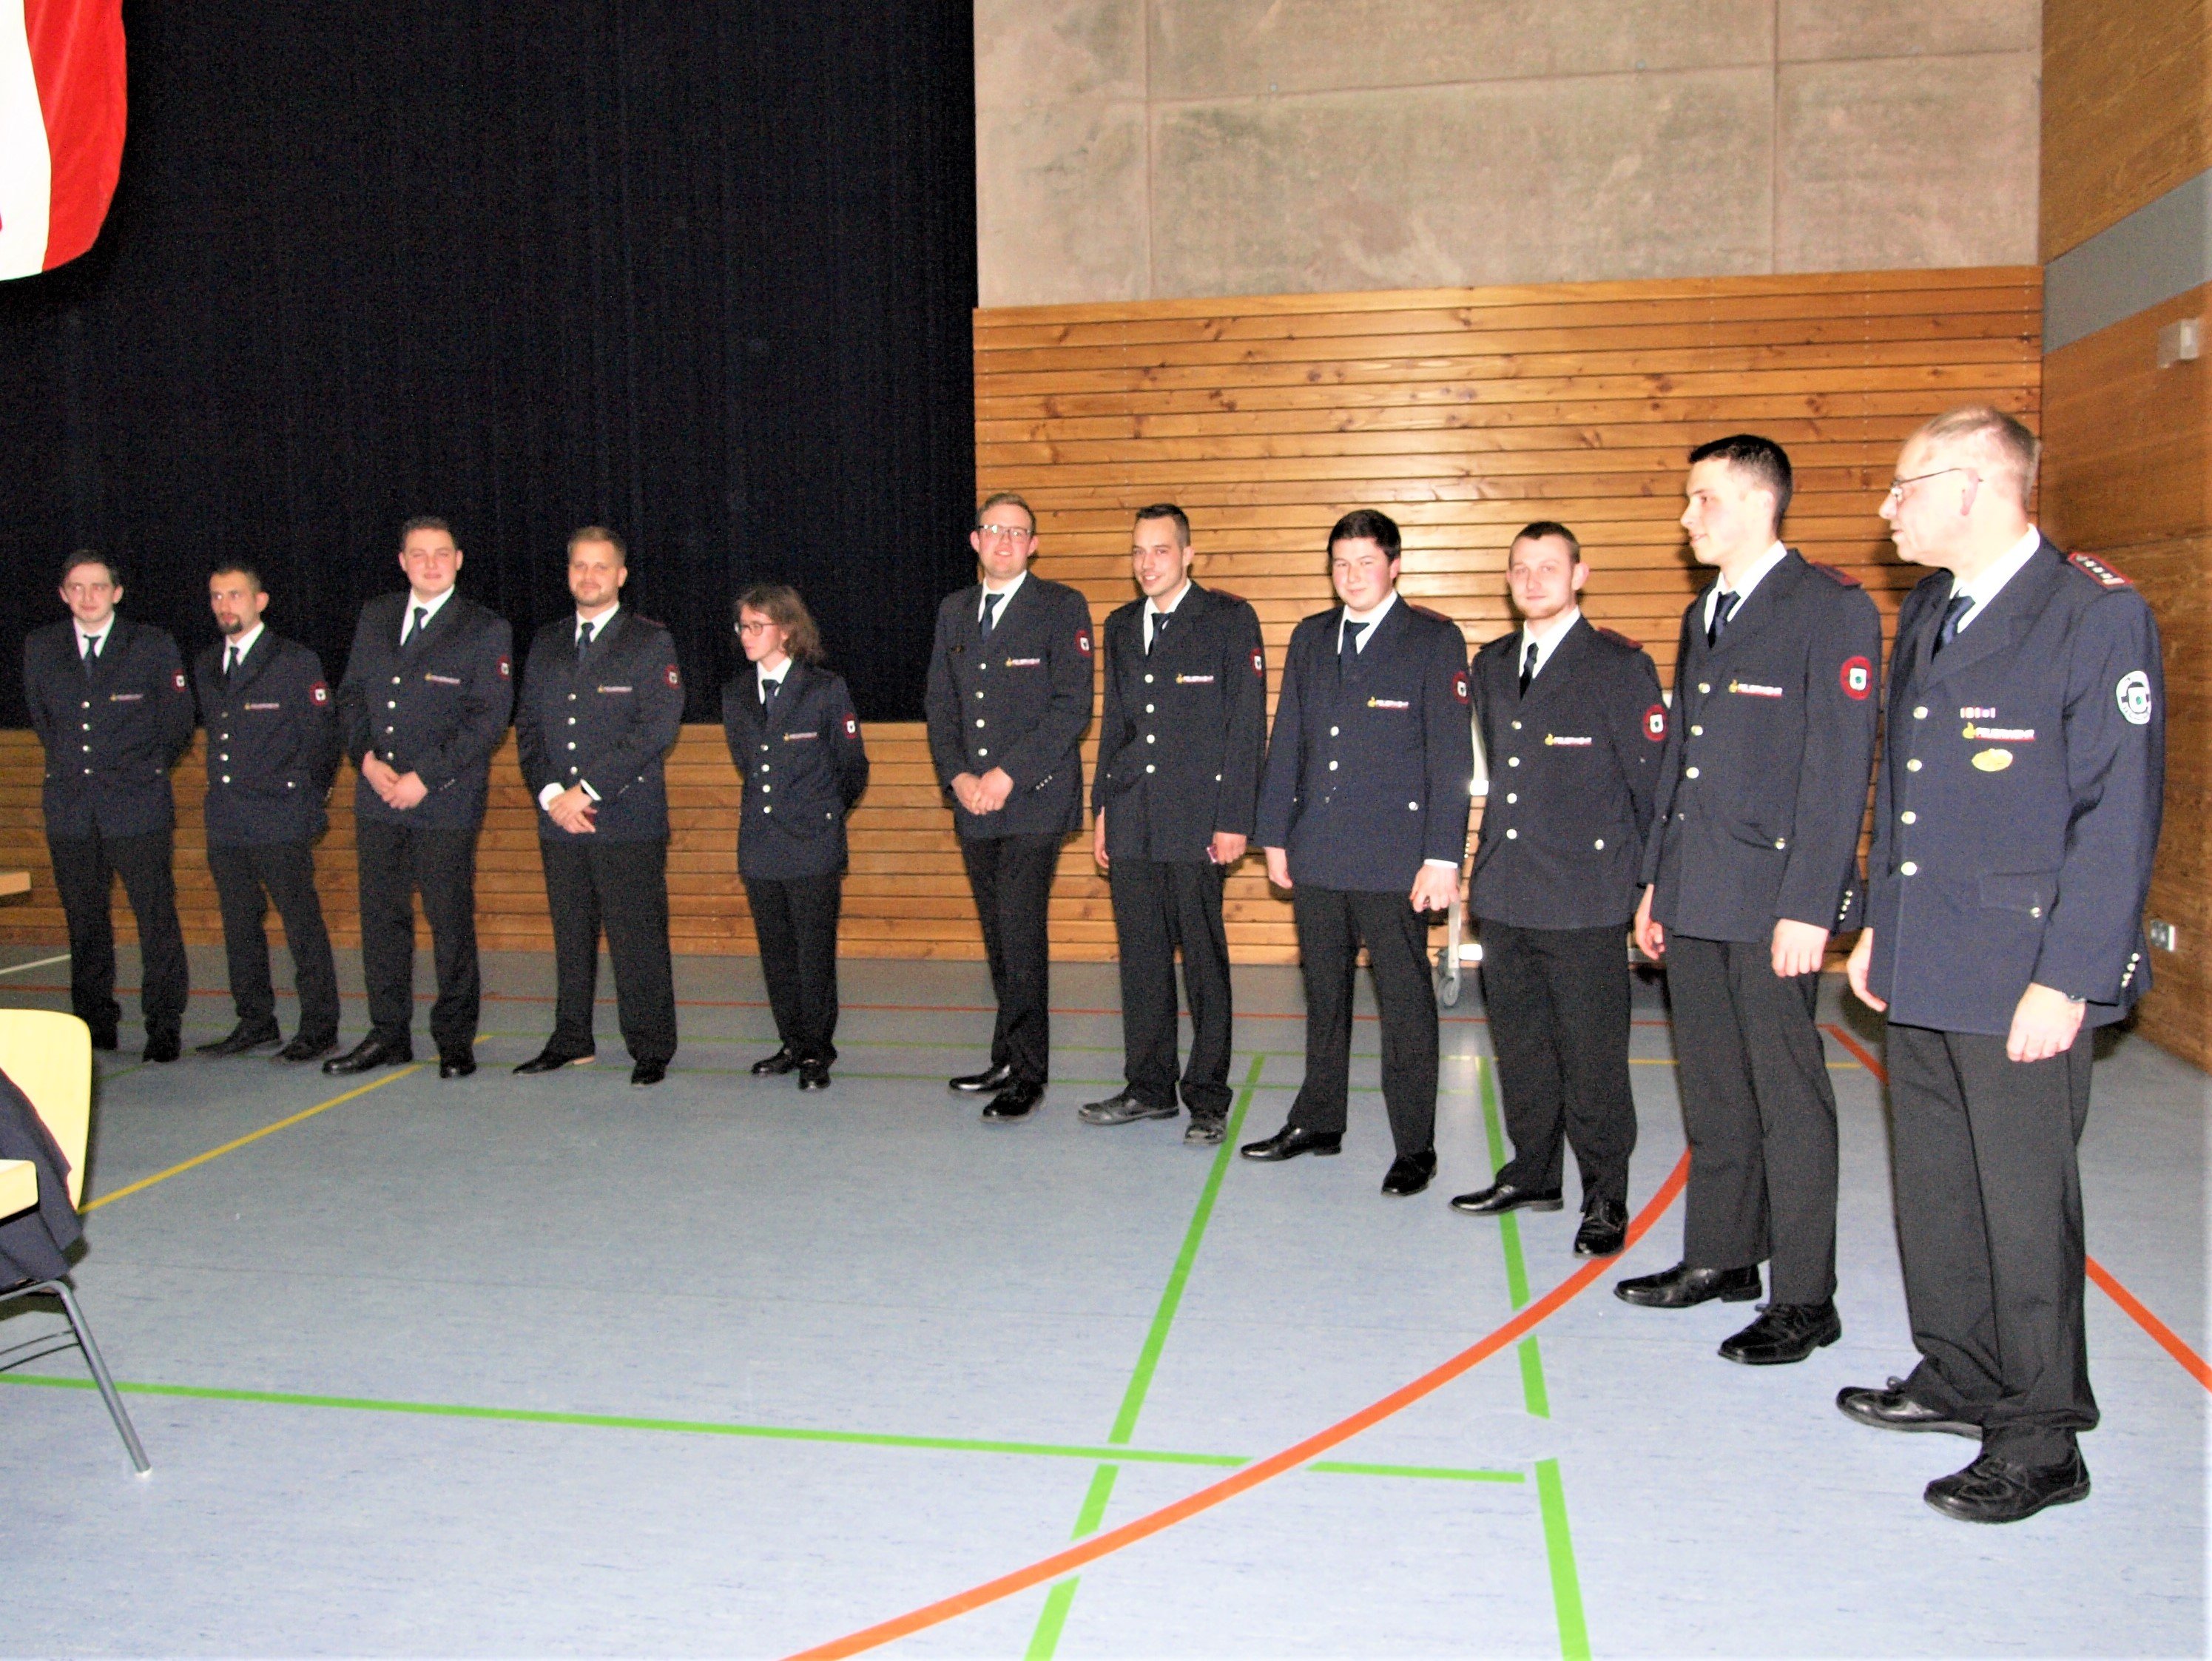 Nachdem die entsprechenden Lehrgänge absolviert waren, konnten einige Feuerwehrkameraden befördert werden.